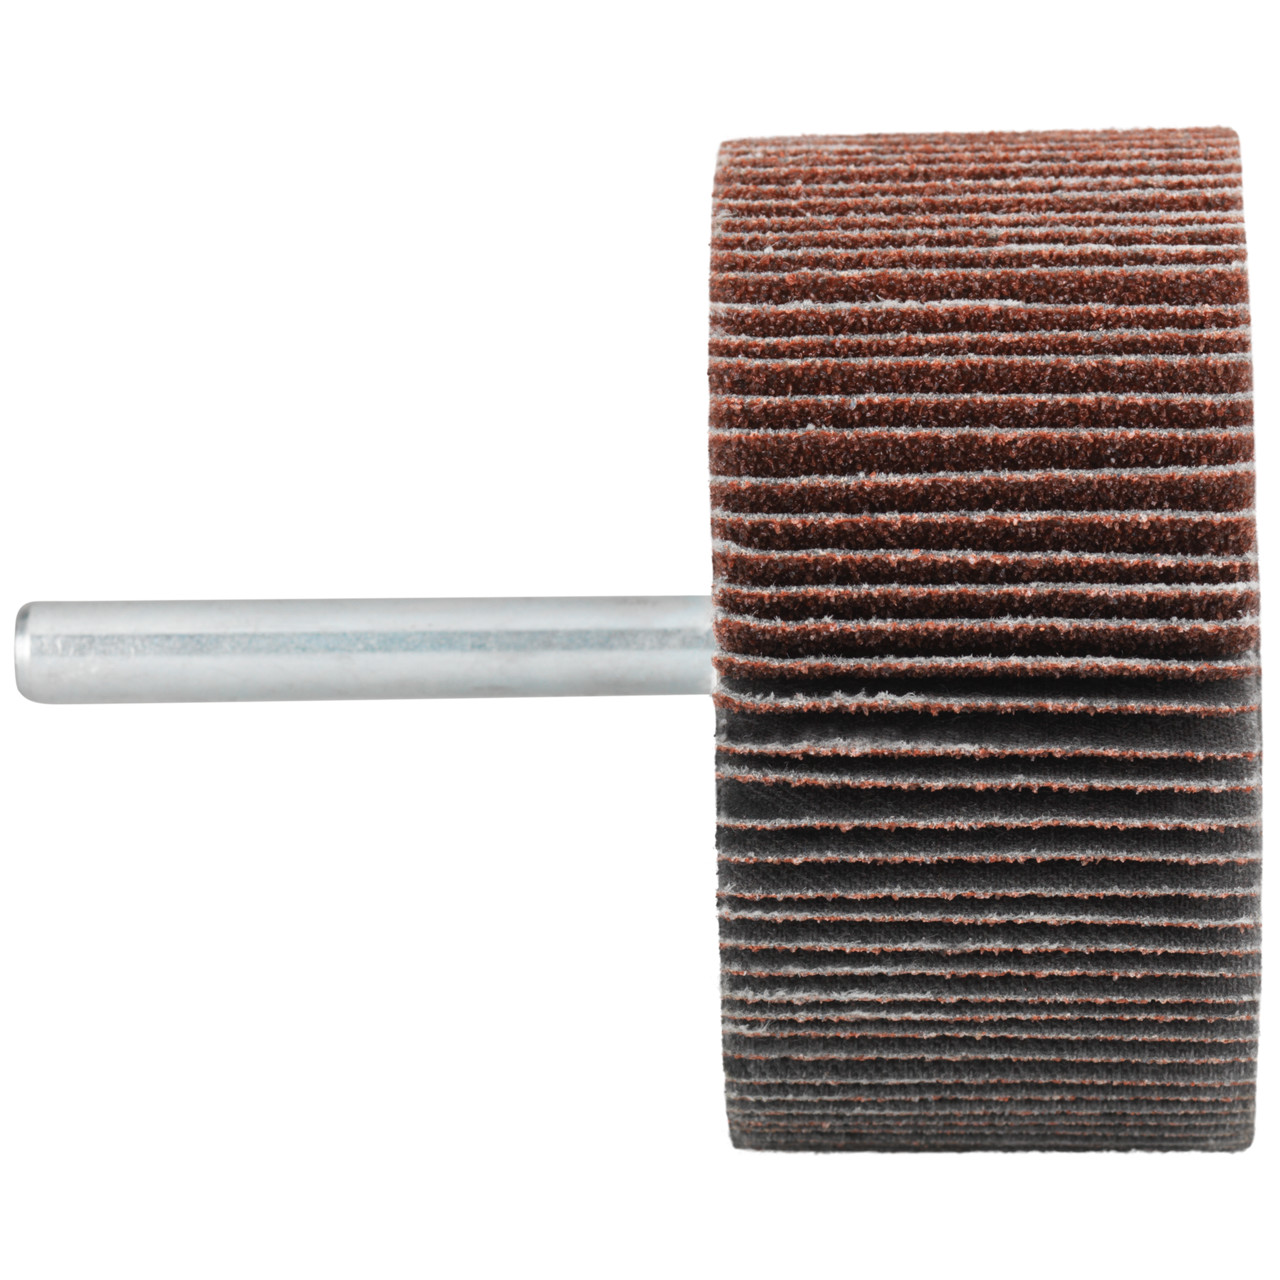 Tyrolit A-P01 C X Pennen DxD 25x15 Voor staal, roestvast staal en non-ferrometalen, P60, vorm: 52LA, Art. 886805